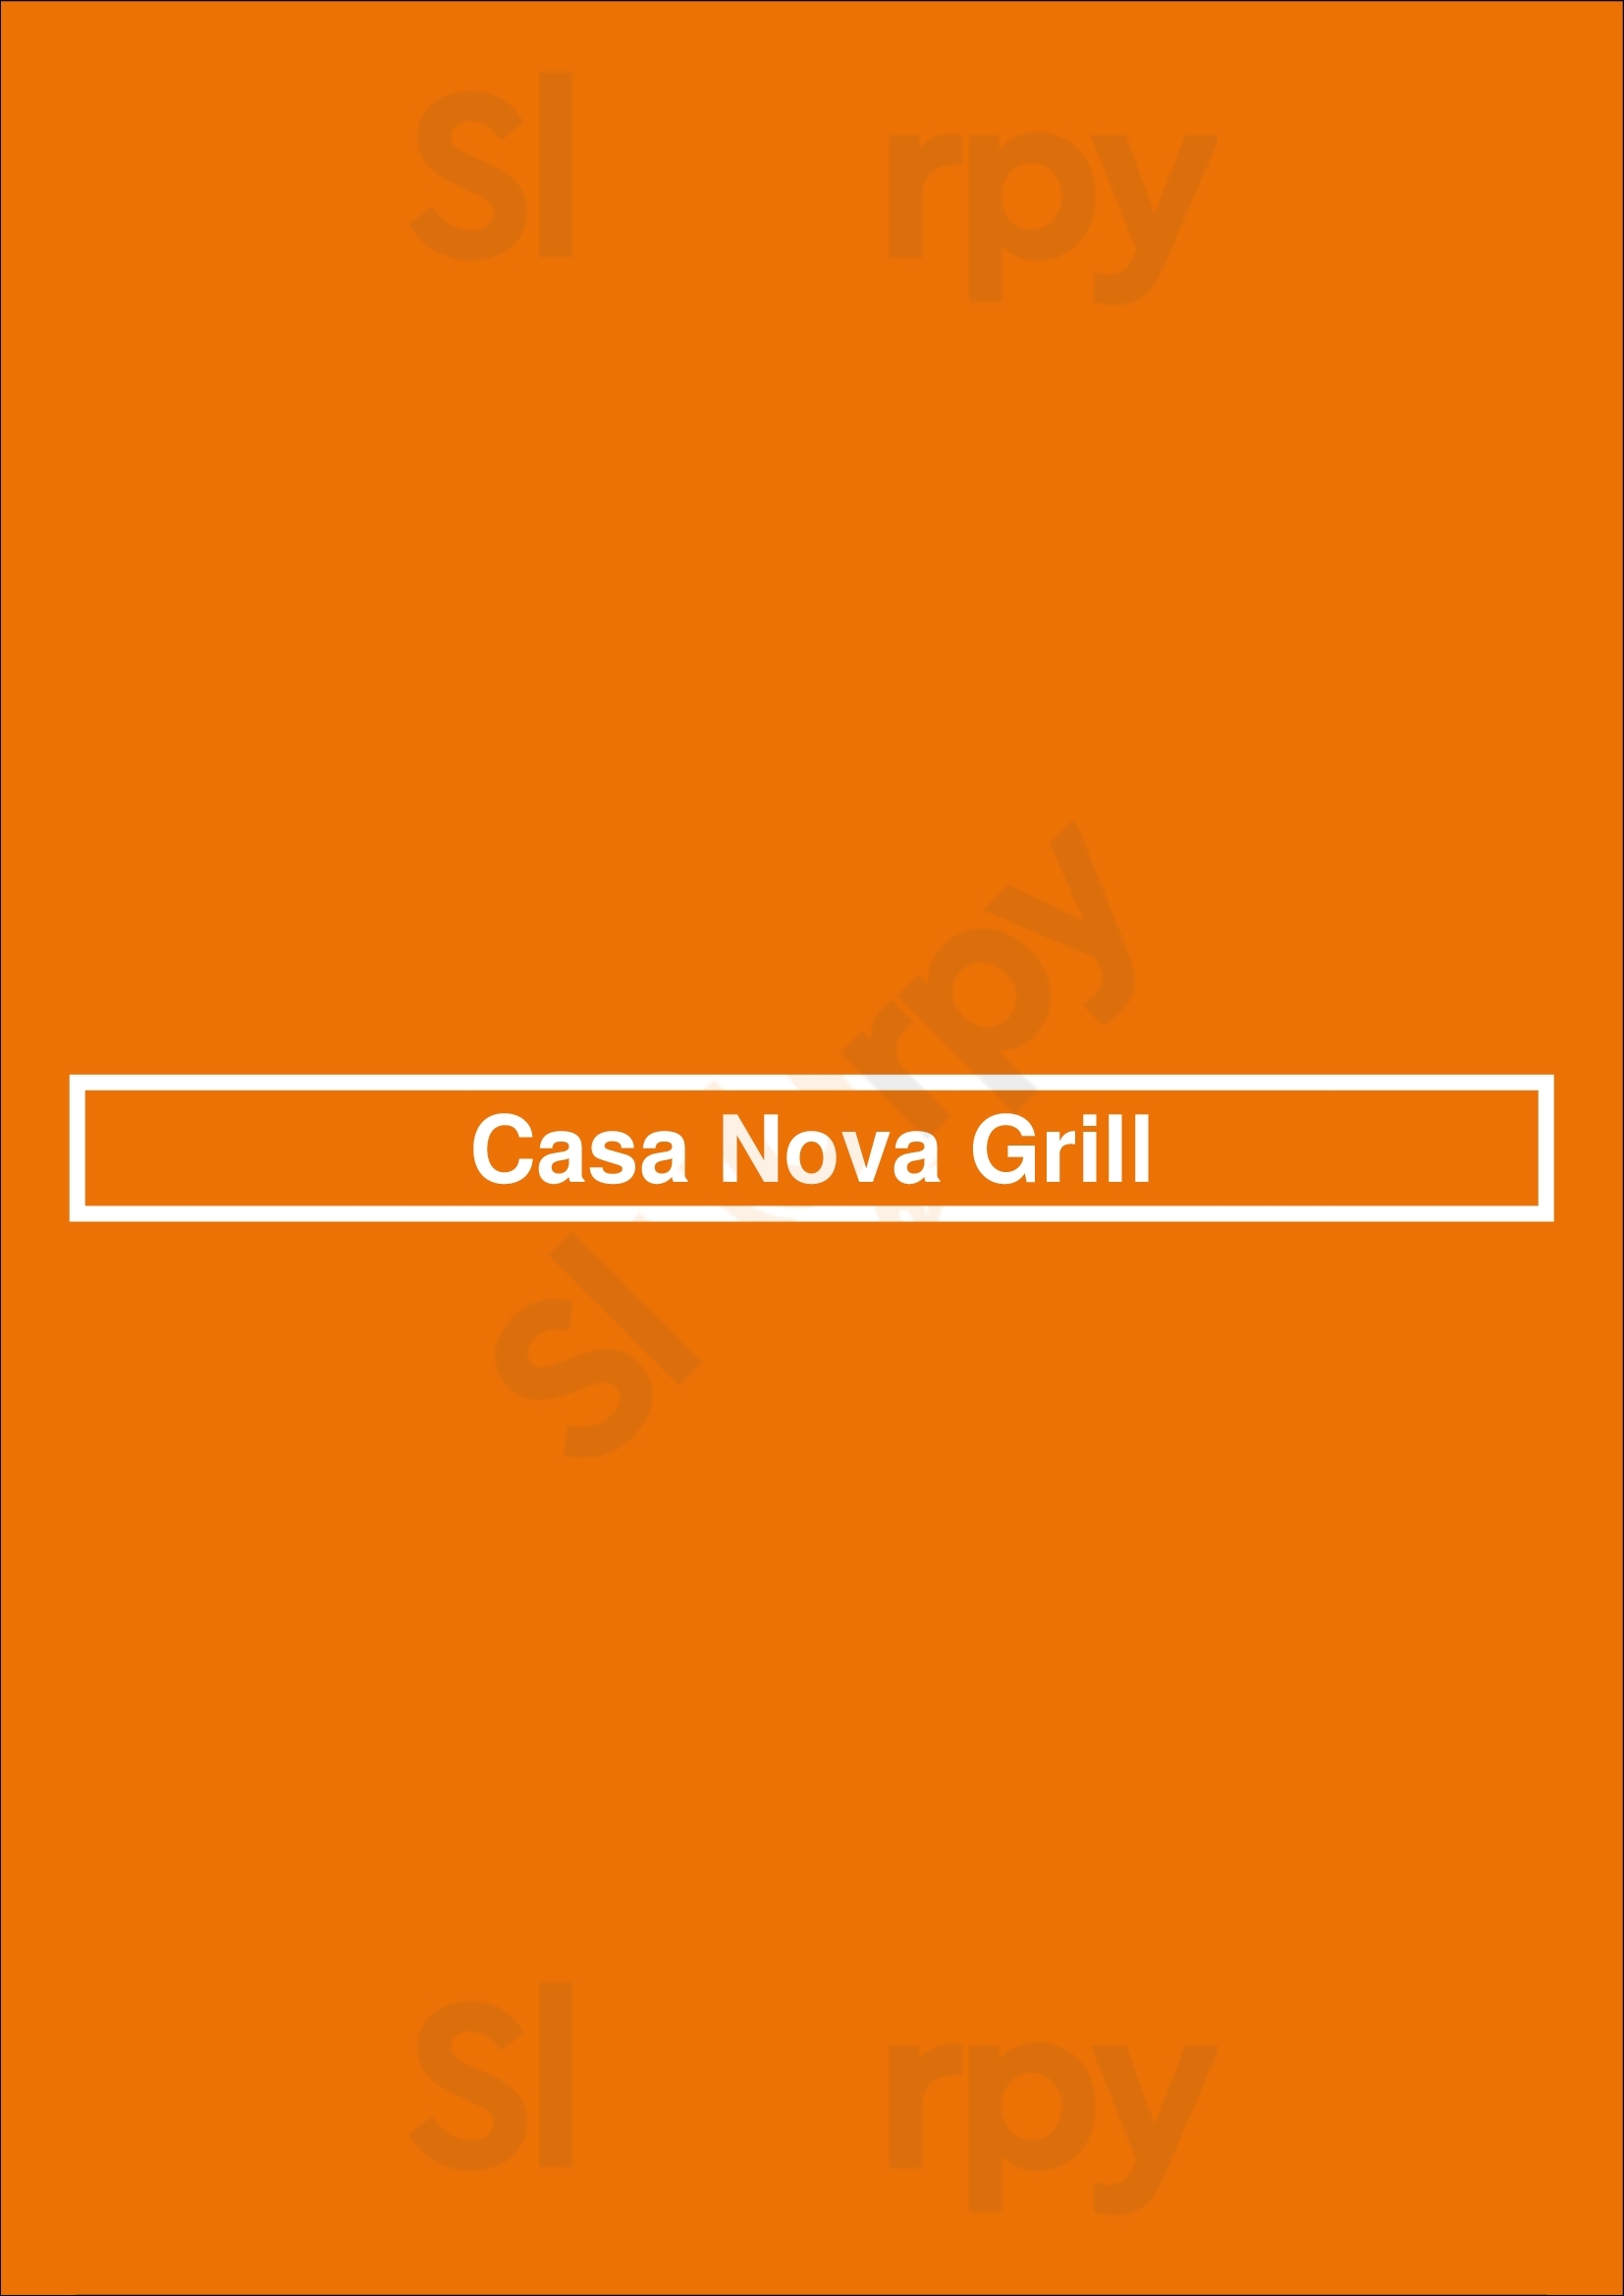 Casa Nova Grill Newark Menu - 1